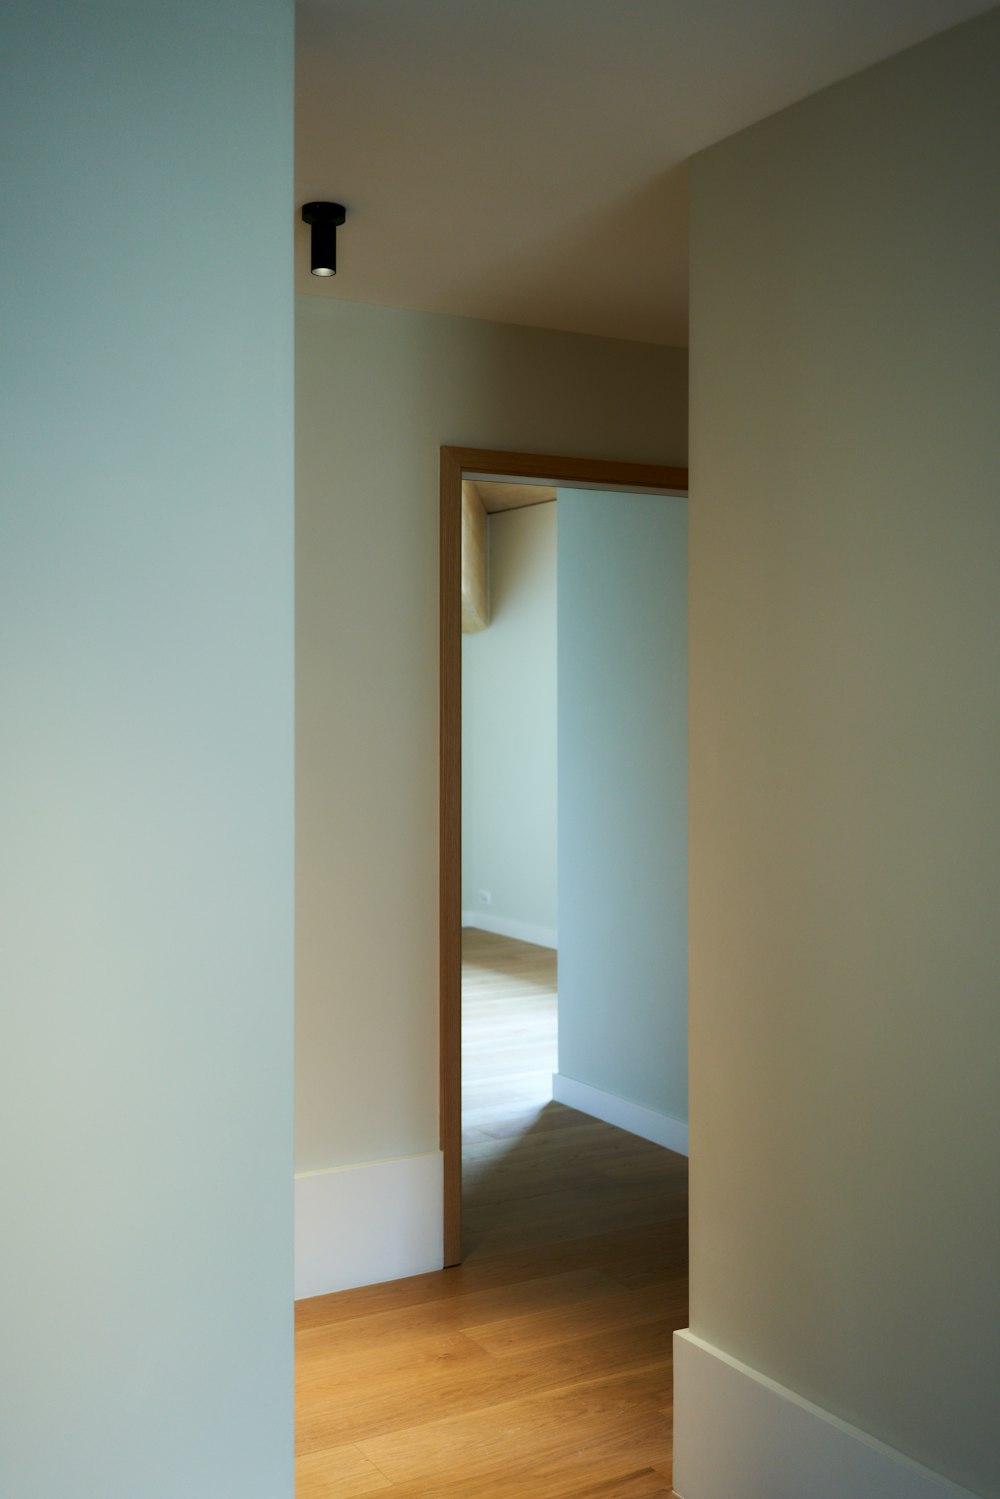 une pièce vide avec des planchers de bois franc et des murs blancs